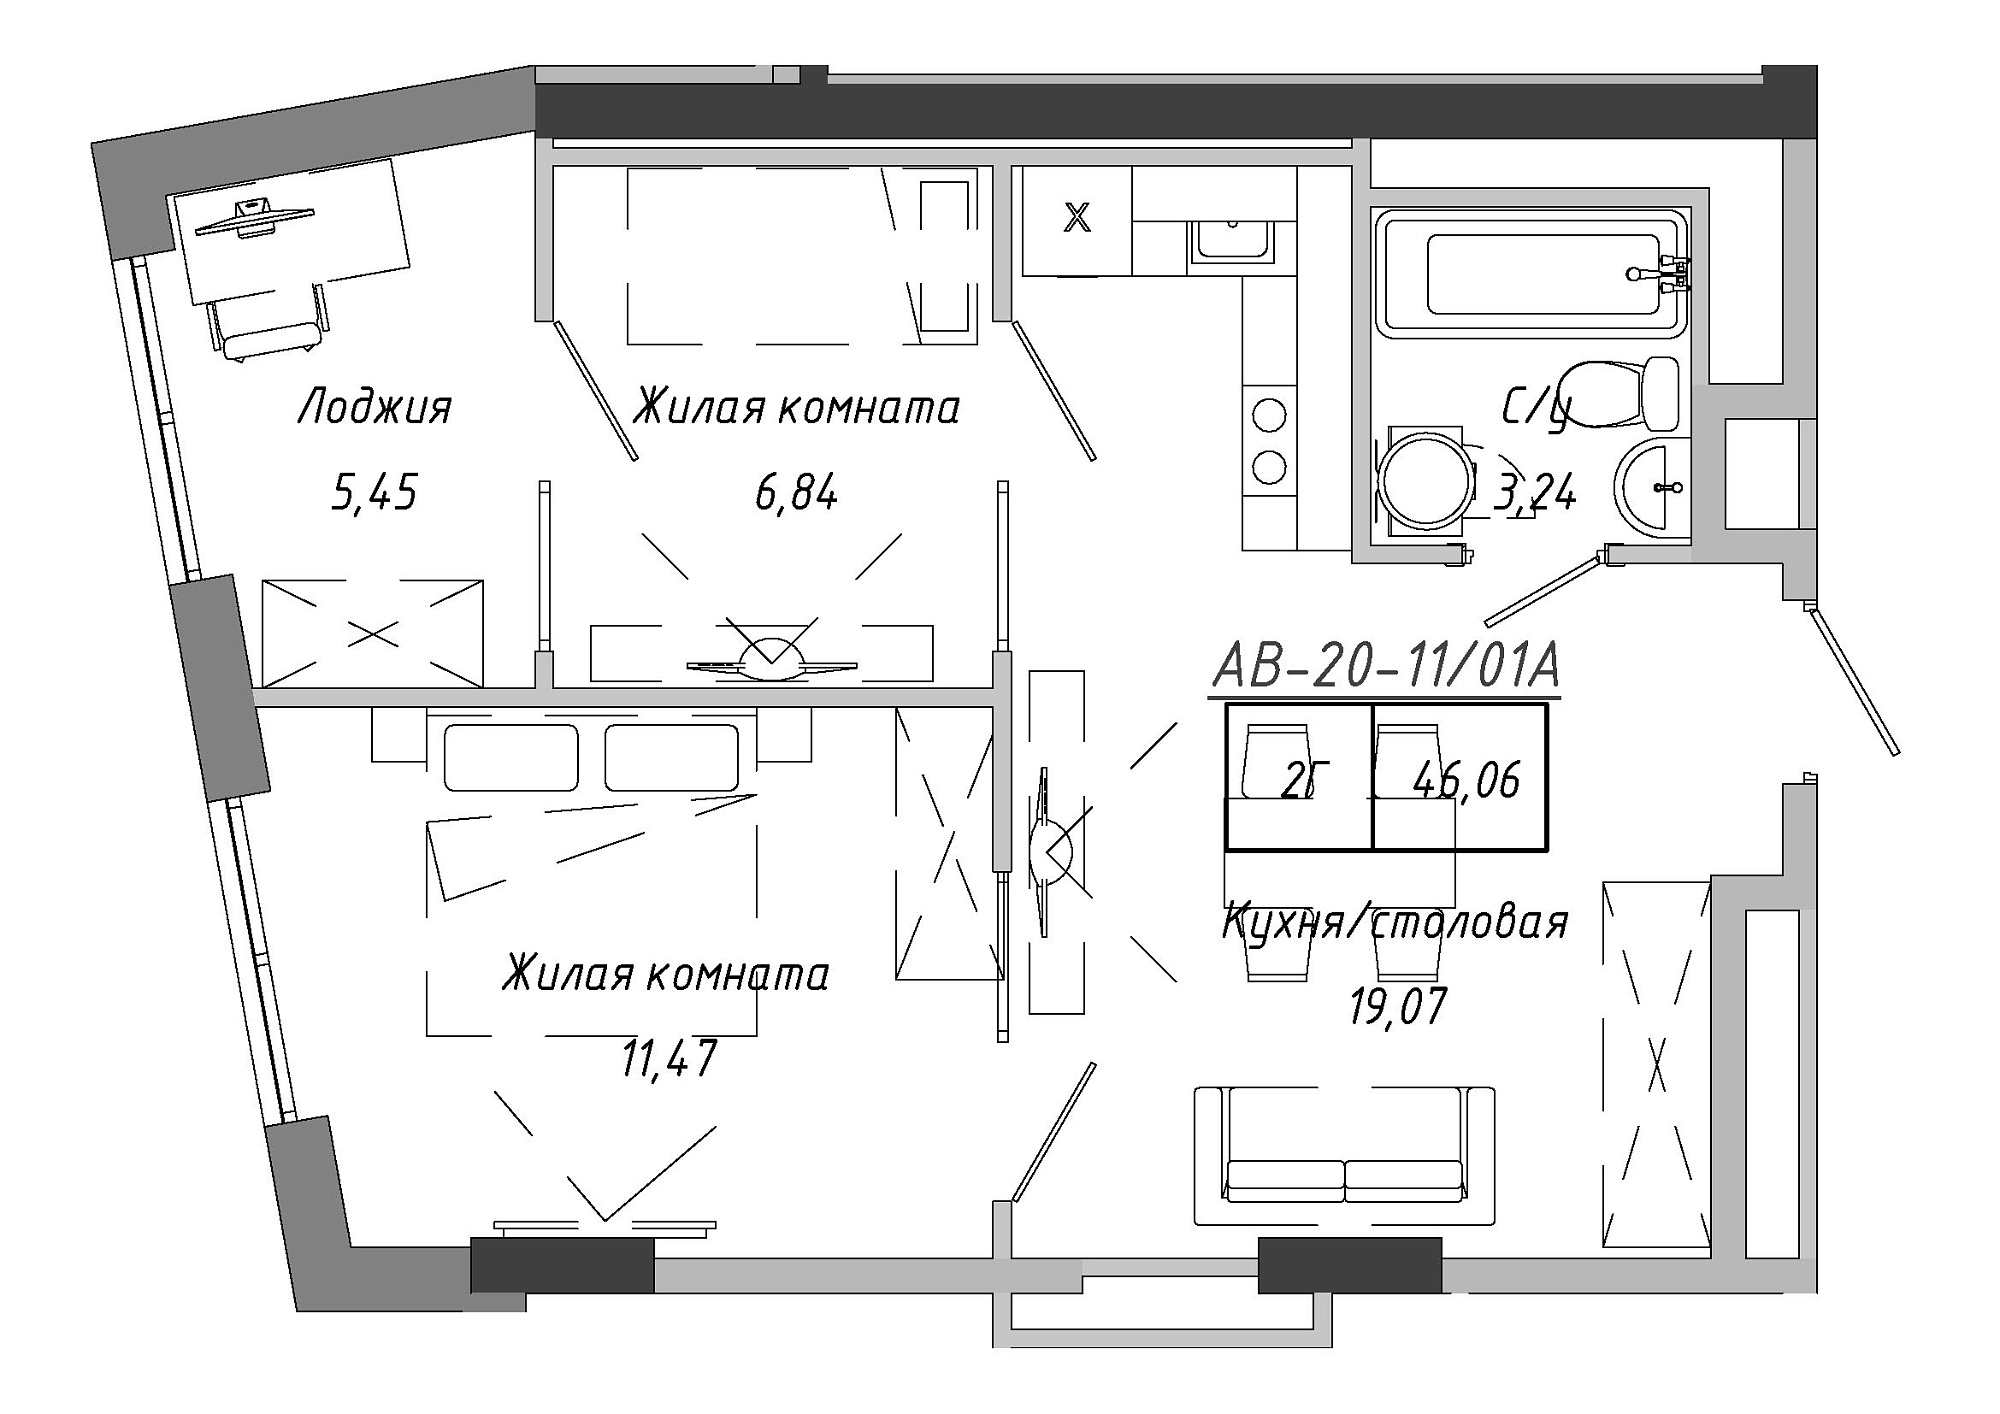 Планування 2-к квартира площею 45.99м2, AB-20-11/0001а.